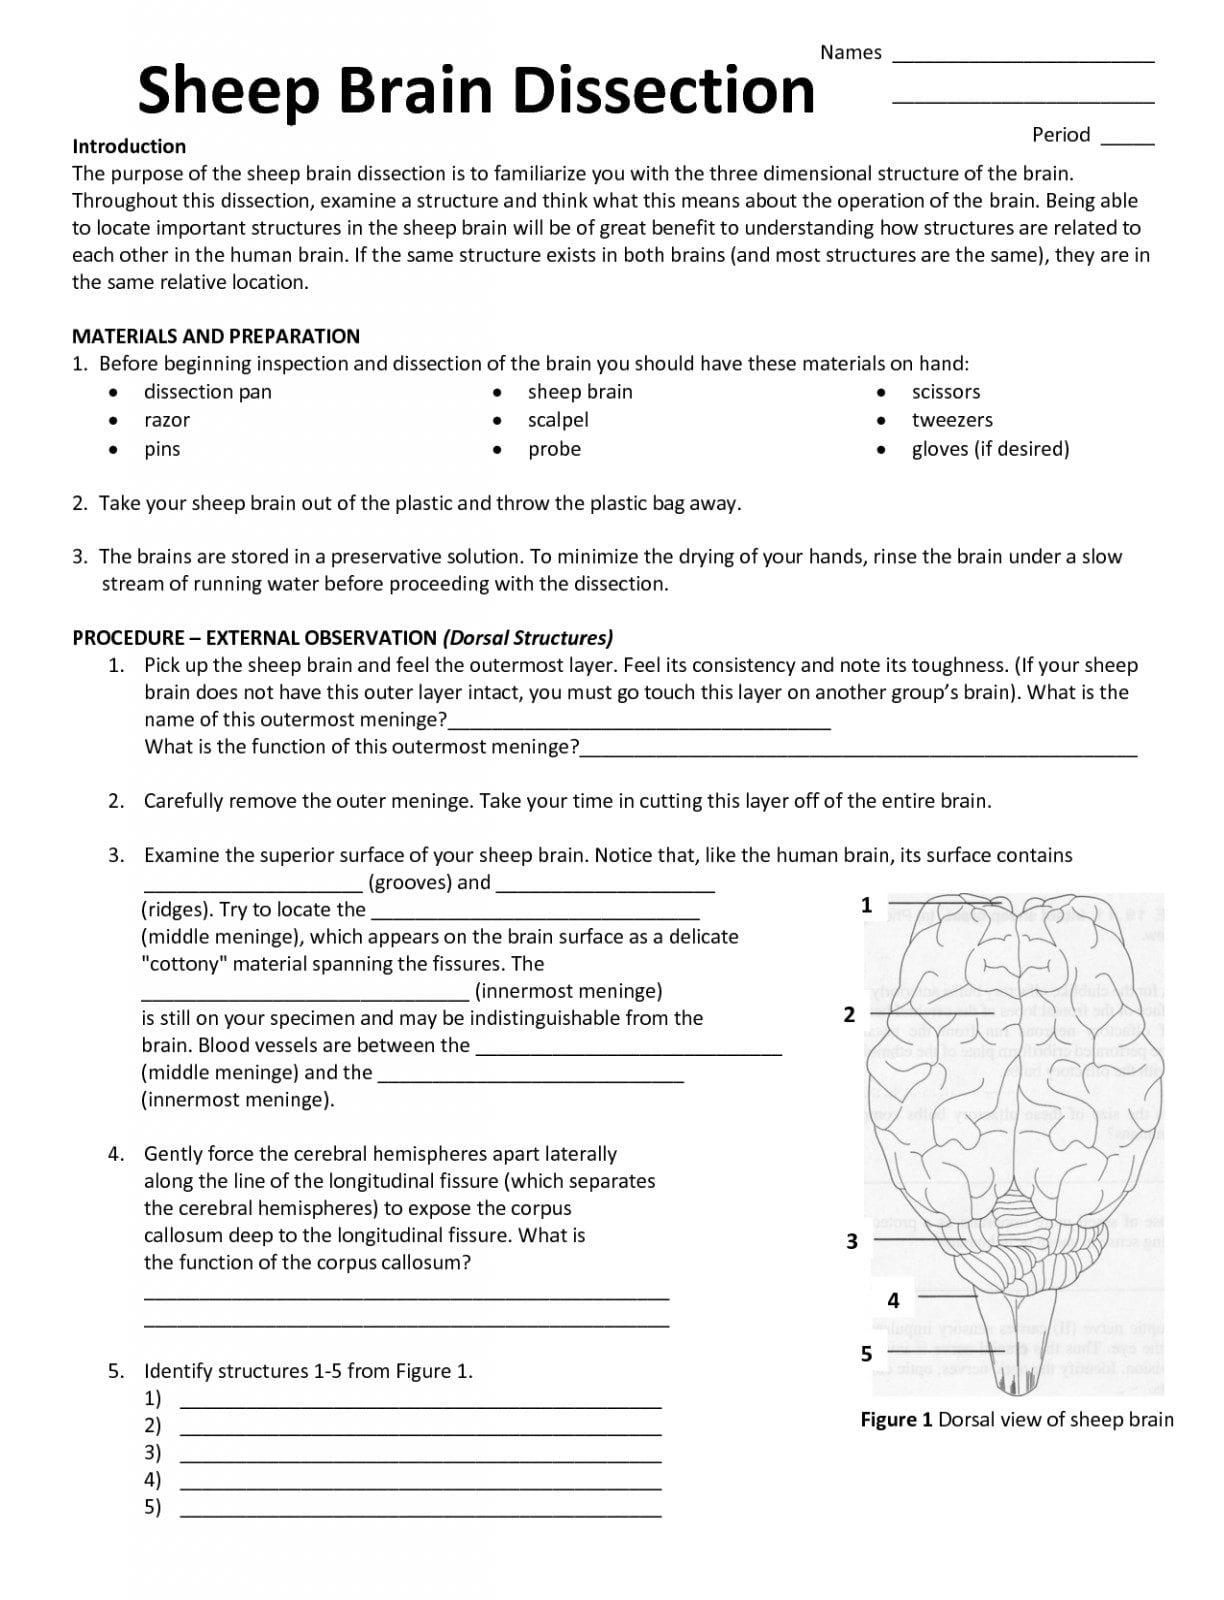 Anatomy Sheep Brain Lab Brain Lab Worksheet Answer Key Db excel